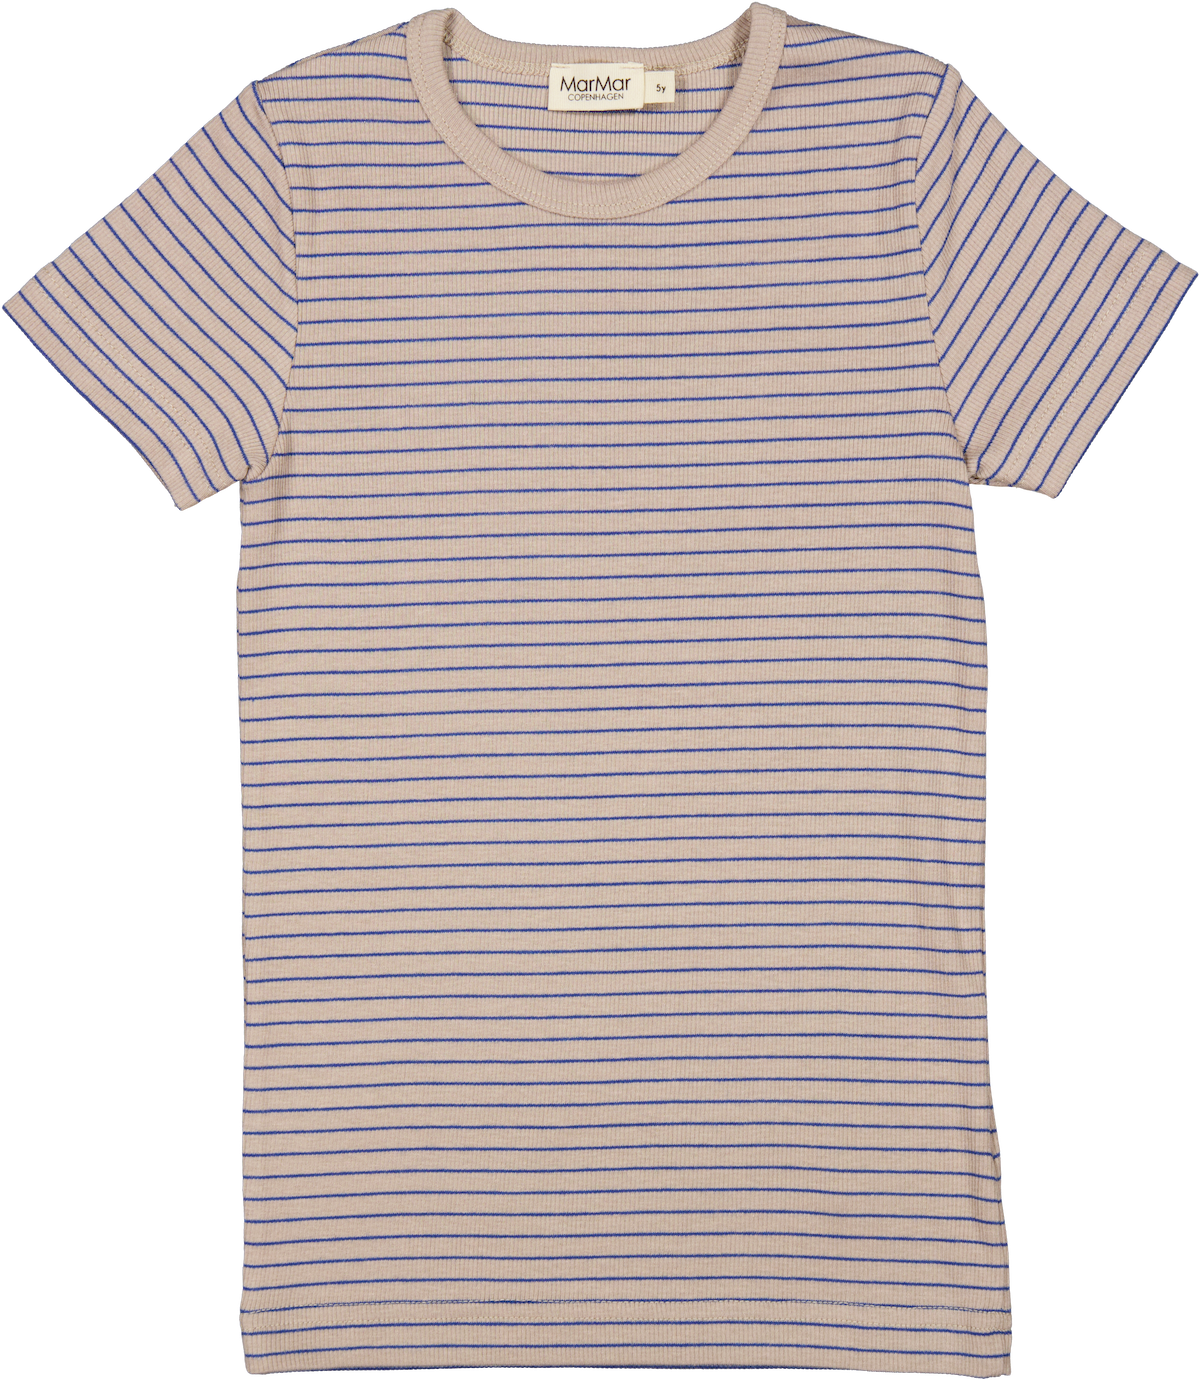 Mar Mar Tago T-Shirt - Alpaca Stripe